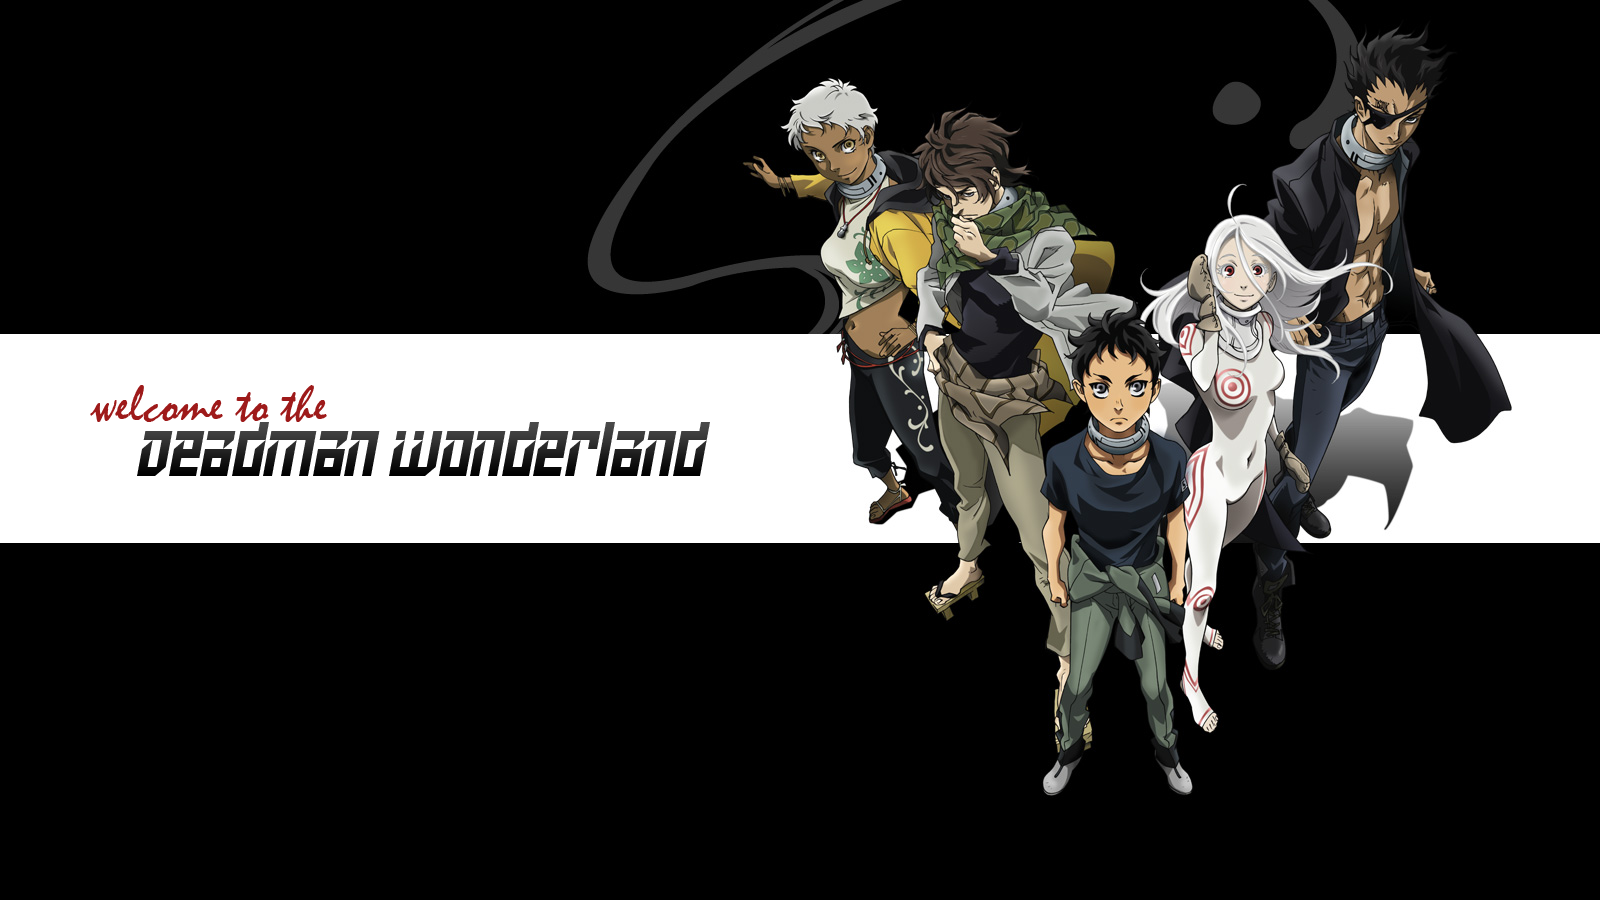 Moonlight Summoner S Anime Sekai Deadman Wonderland